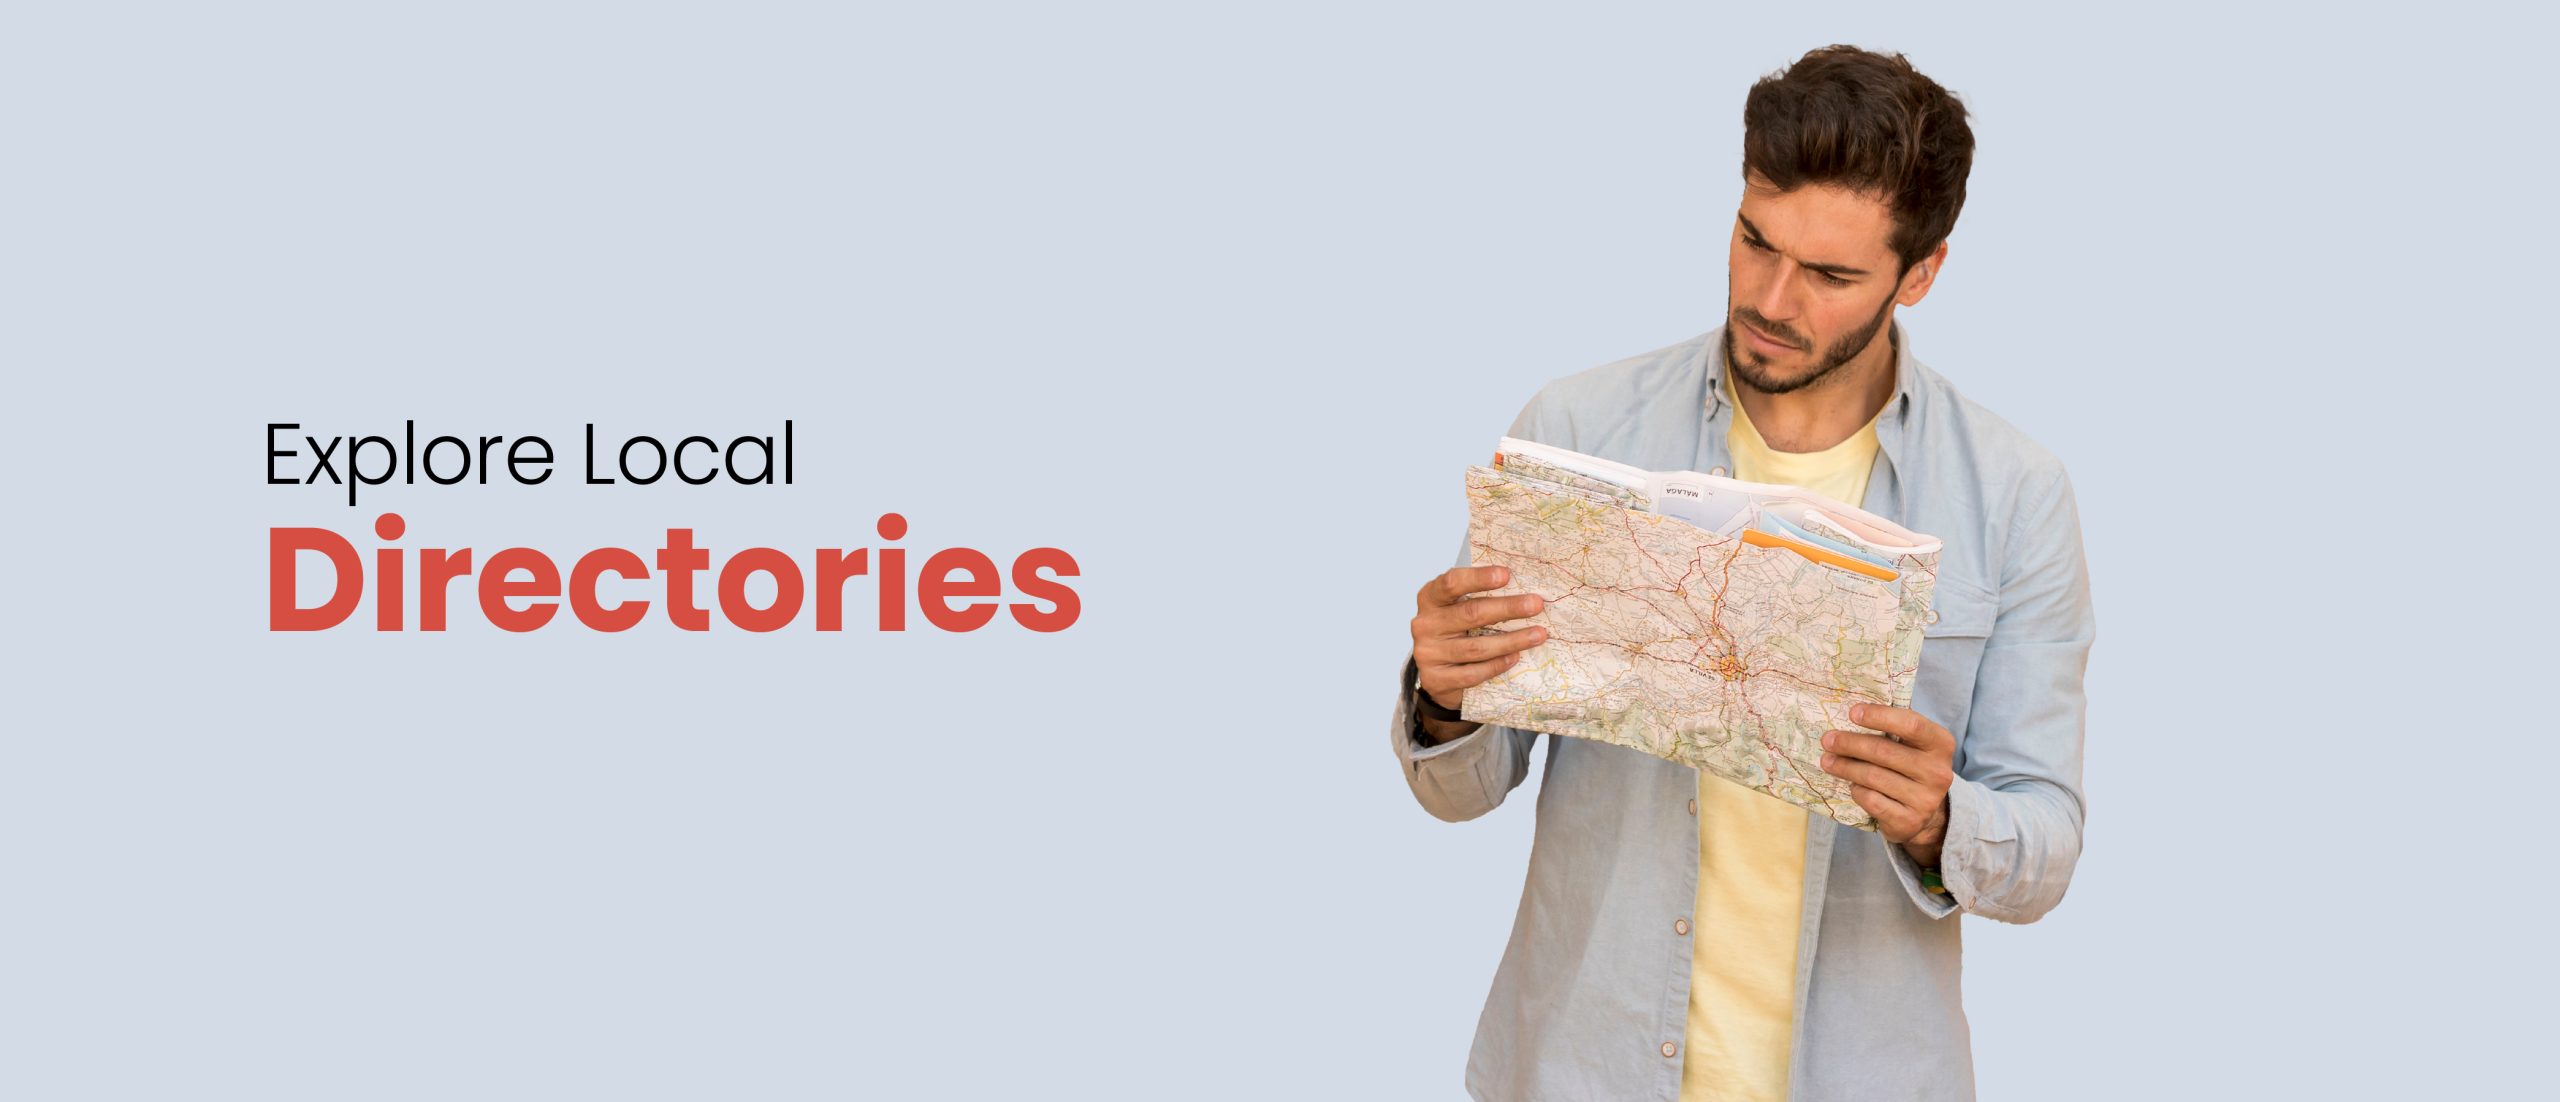 Explore Local Directories